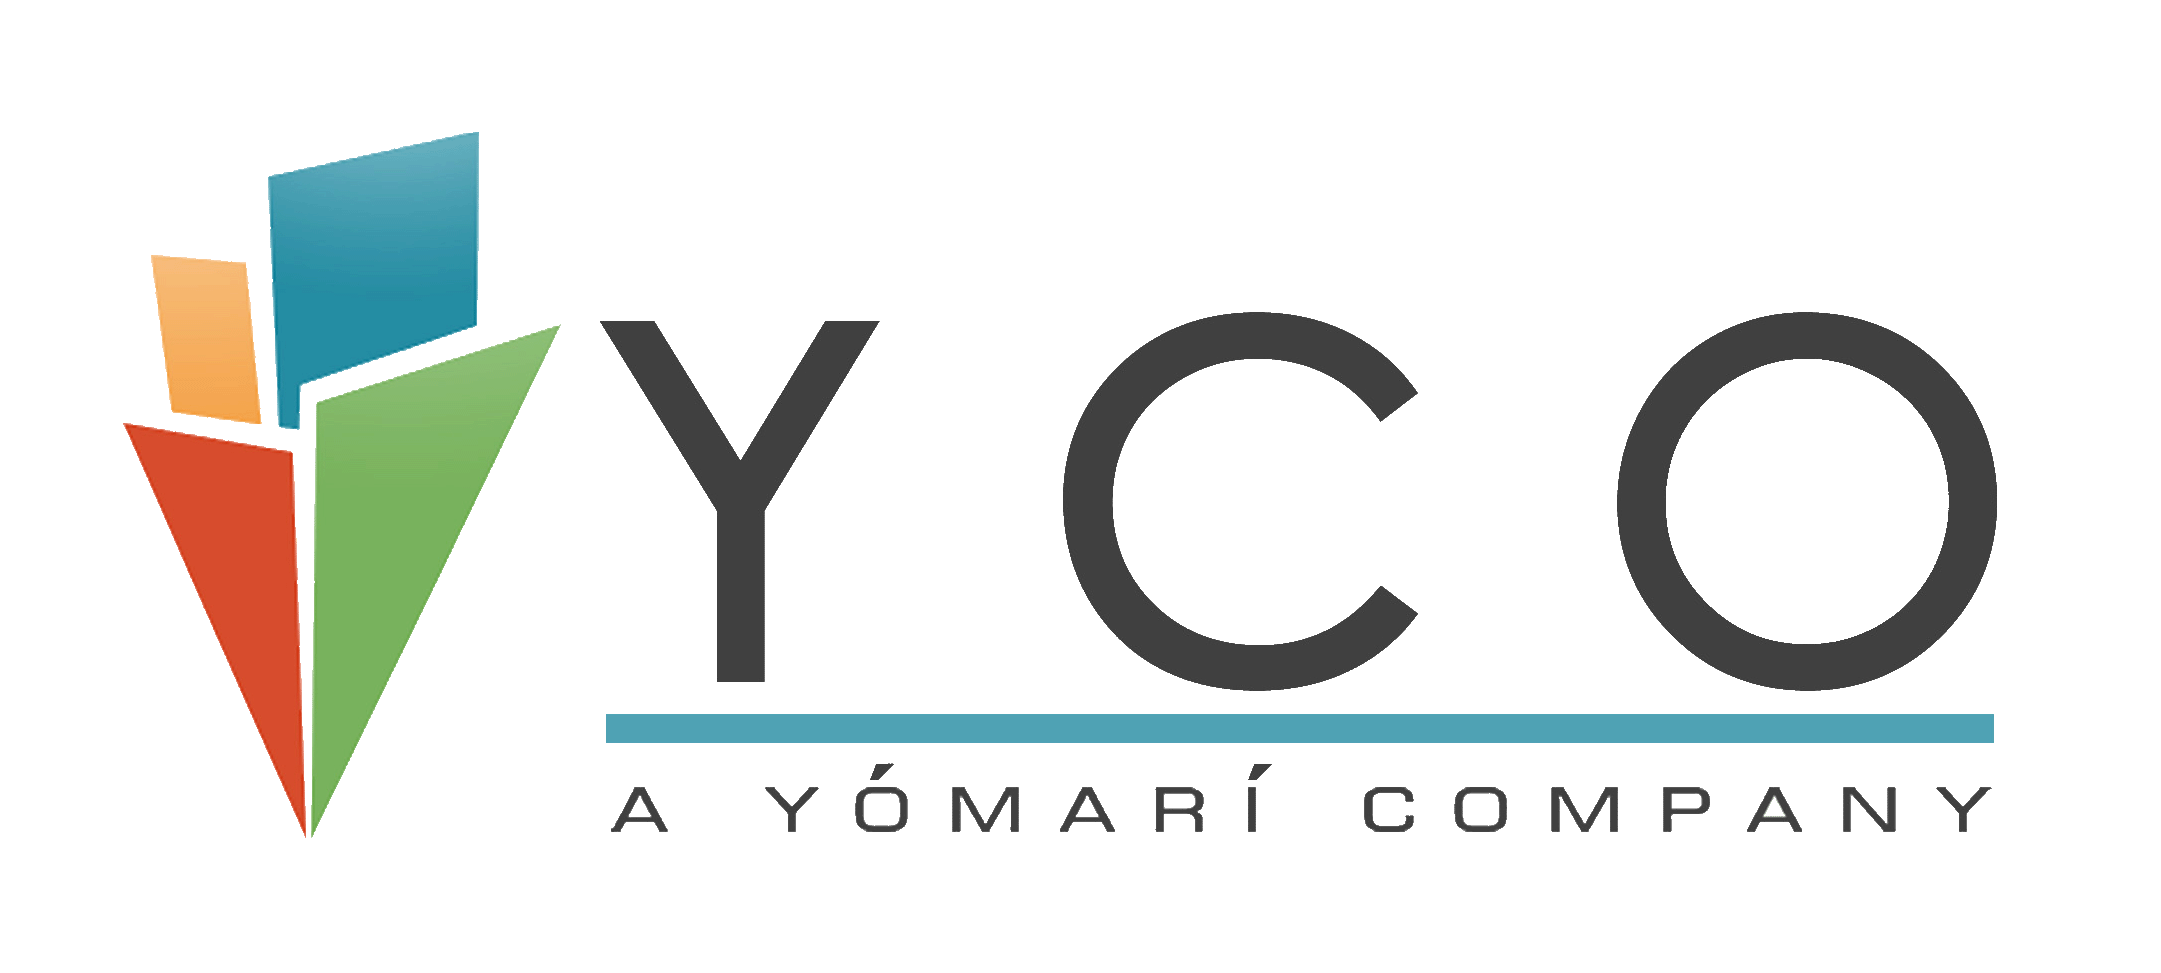 Yco